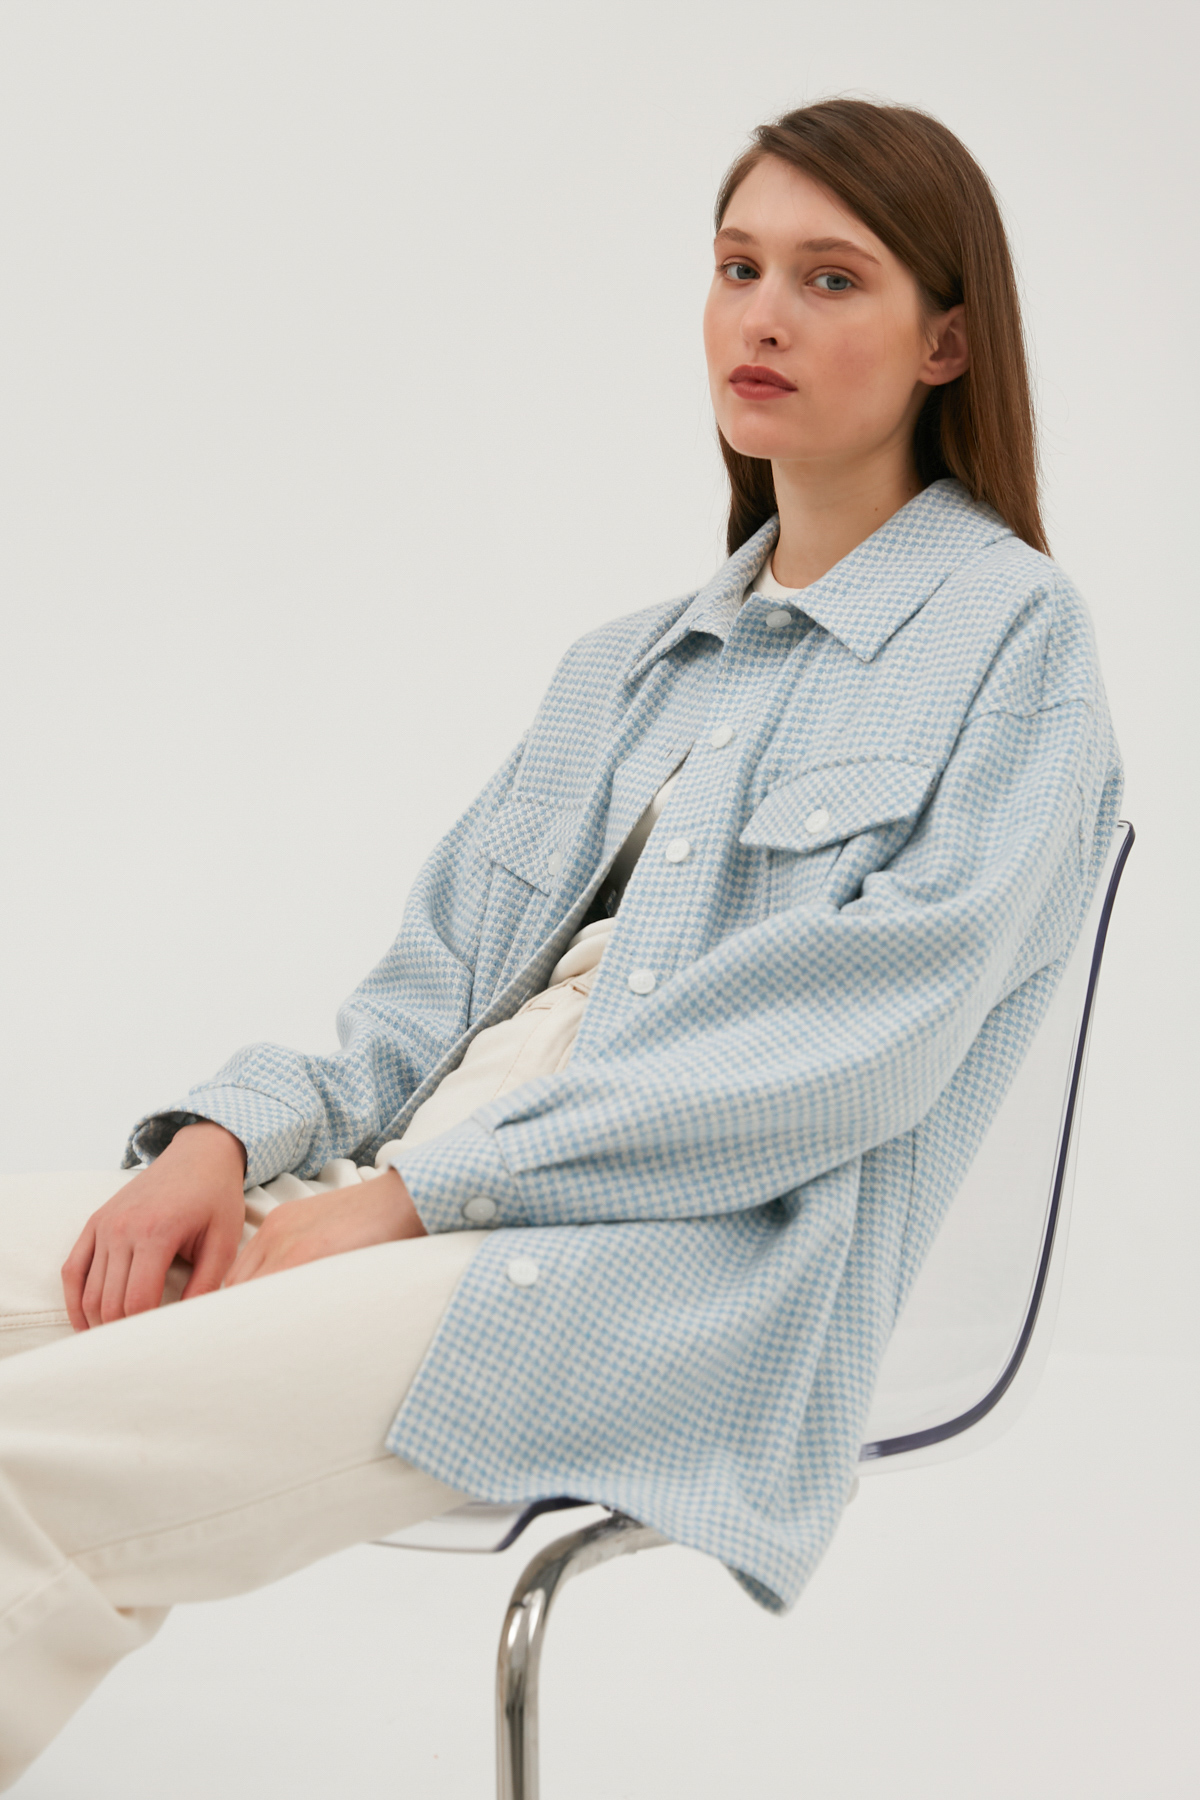 Blue-white plaid flannel top shirt, photo 1